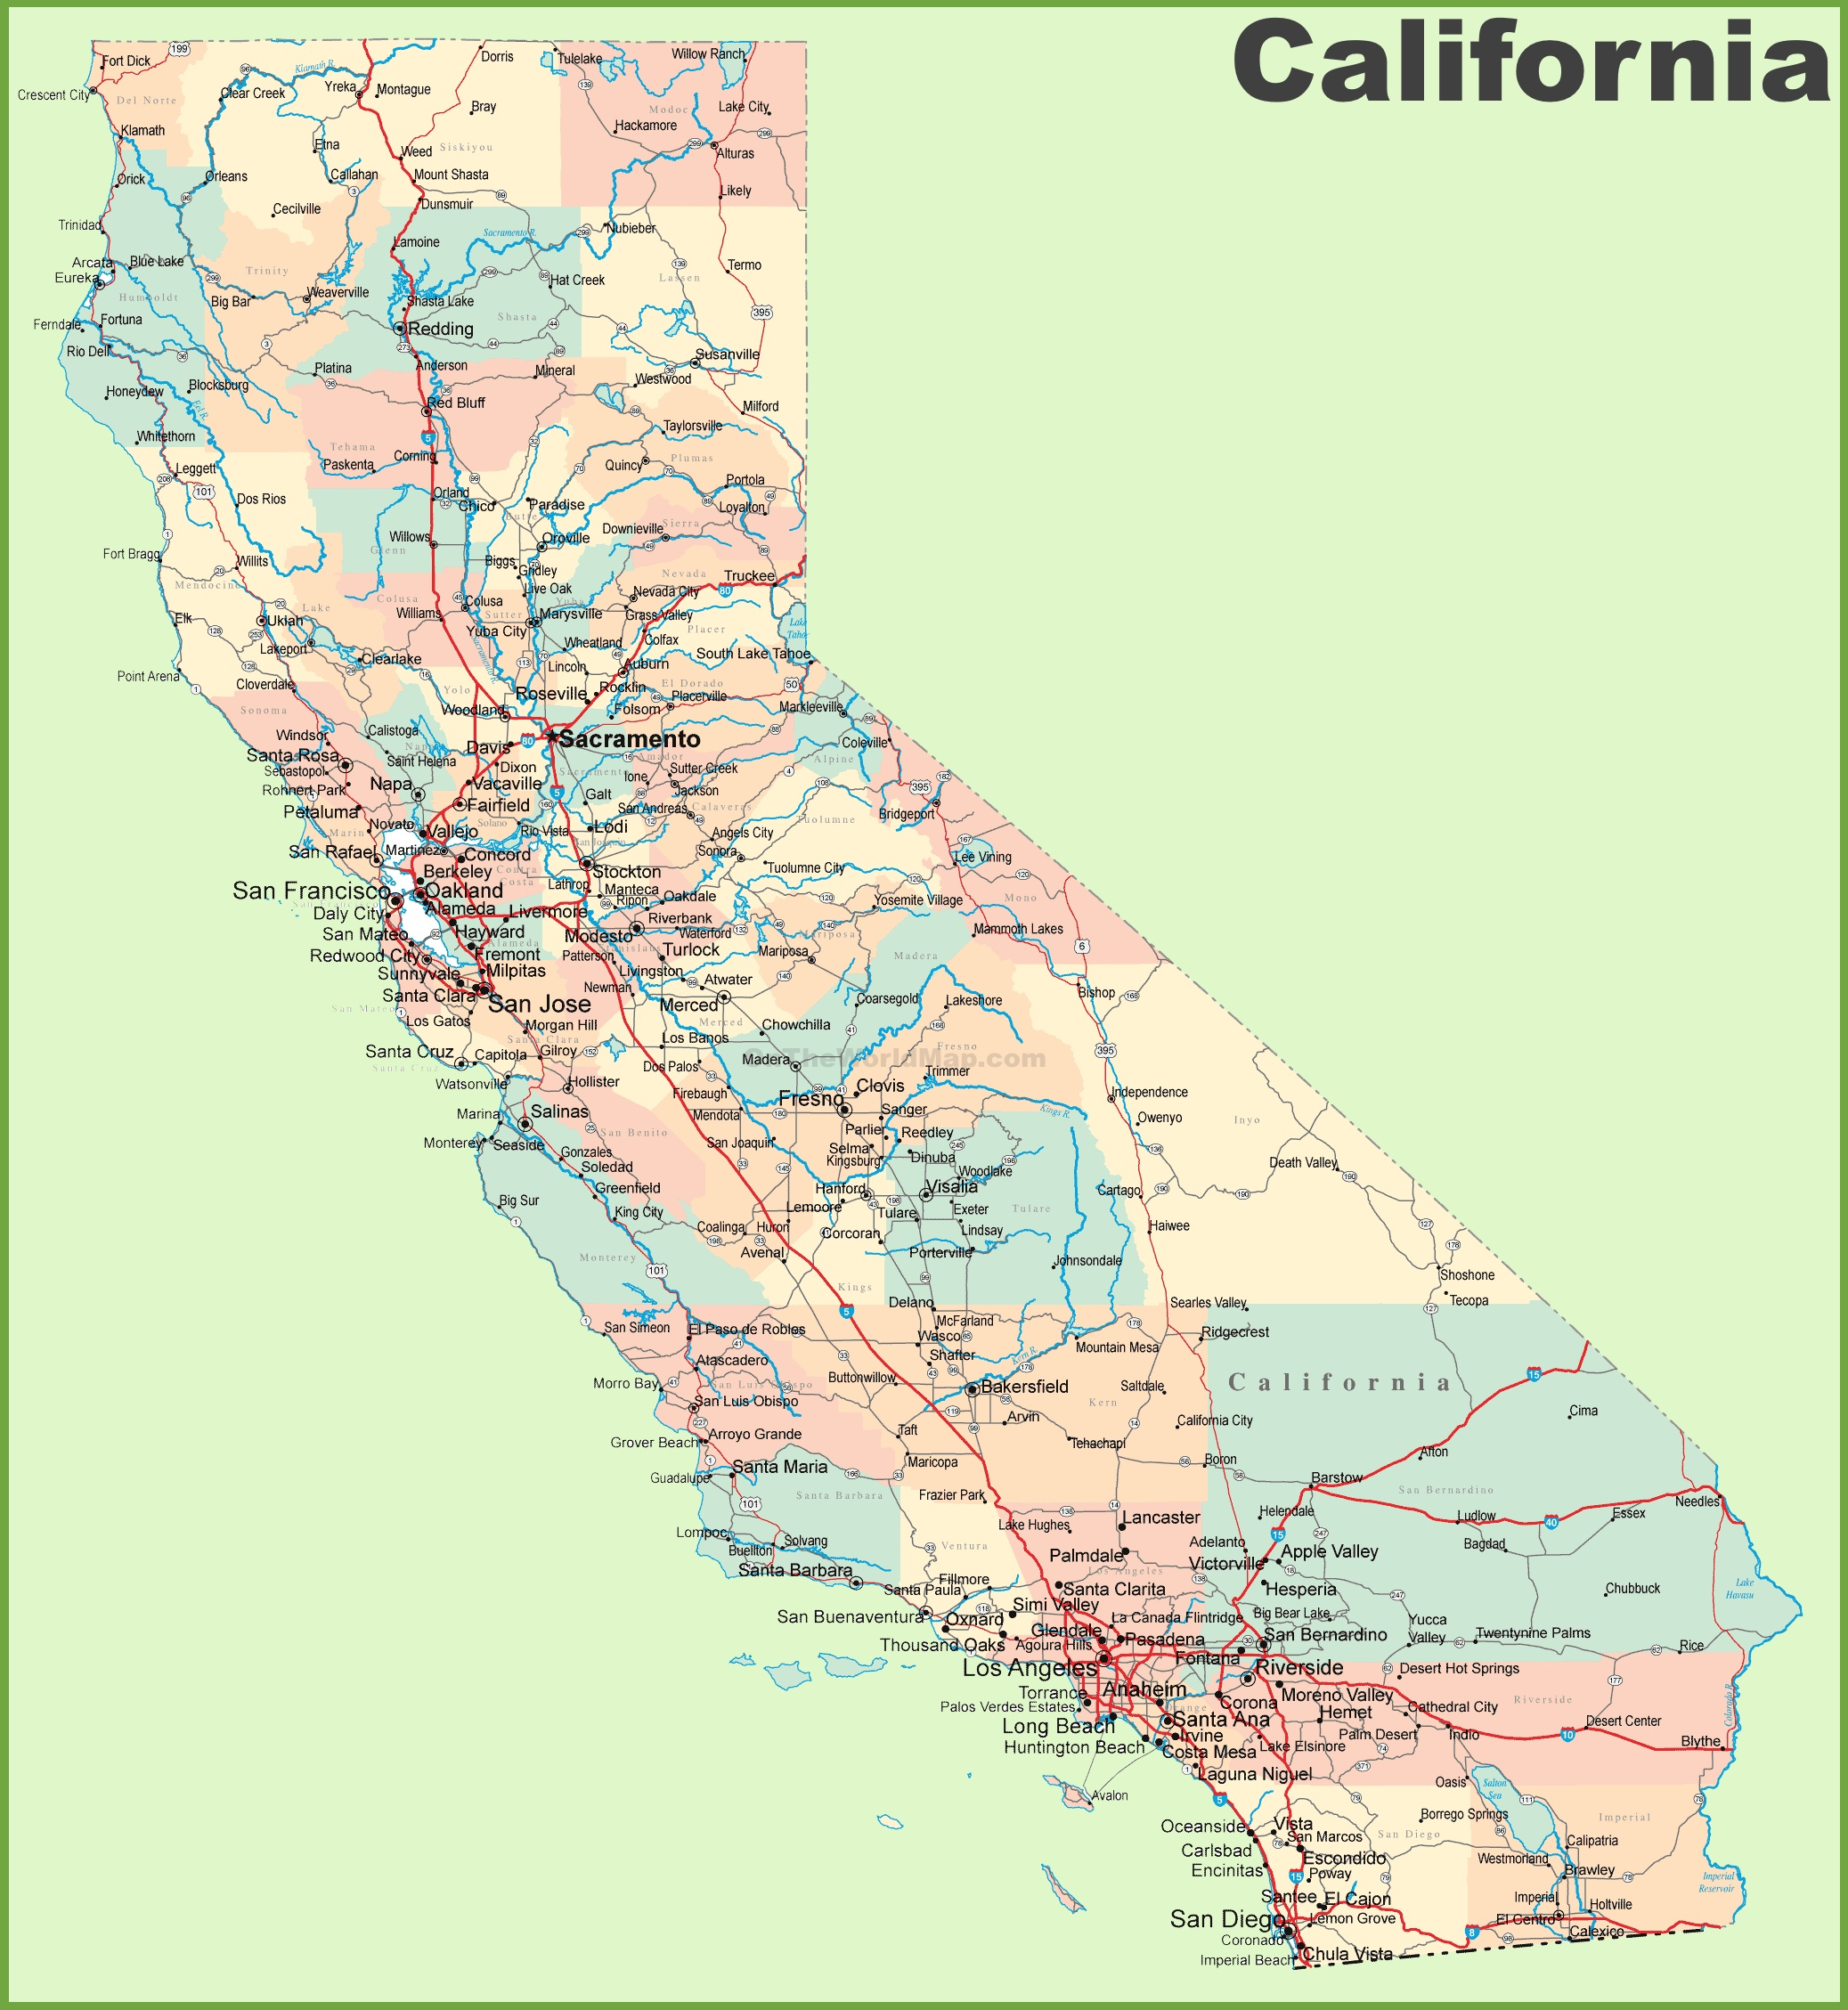 California Road Map California Road Map Map Of California And Cities - California State Map With Cities